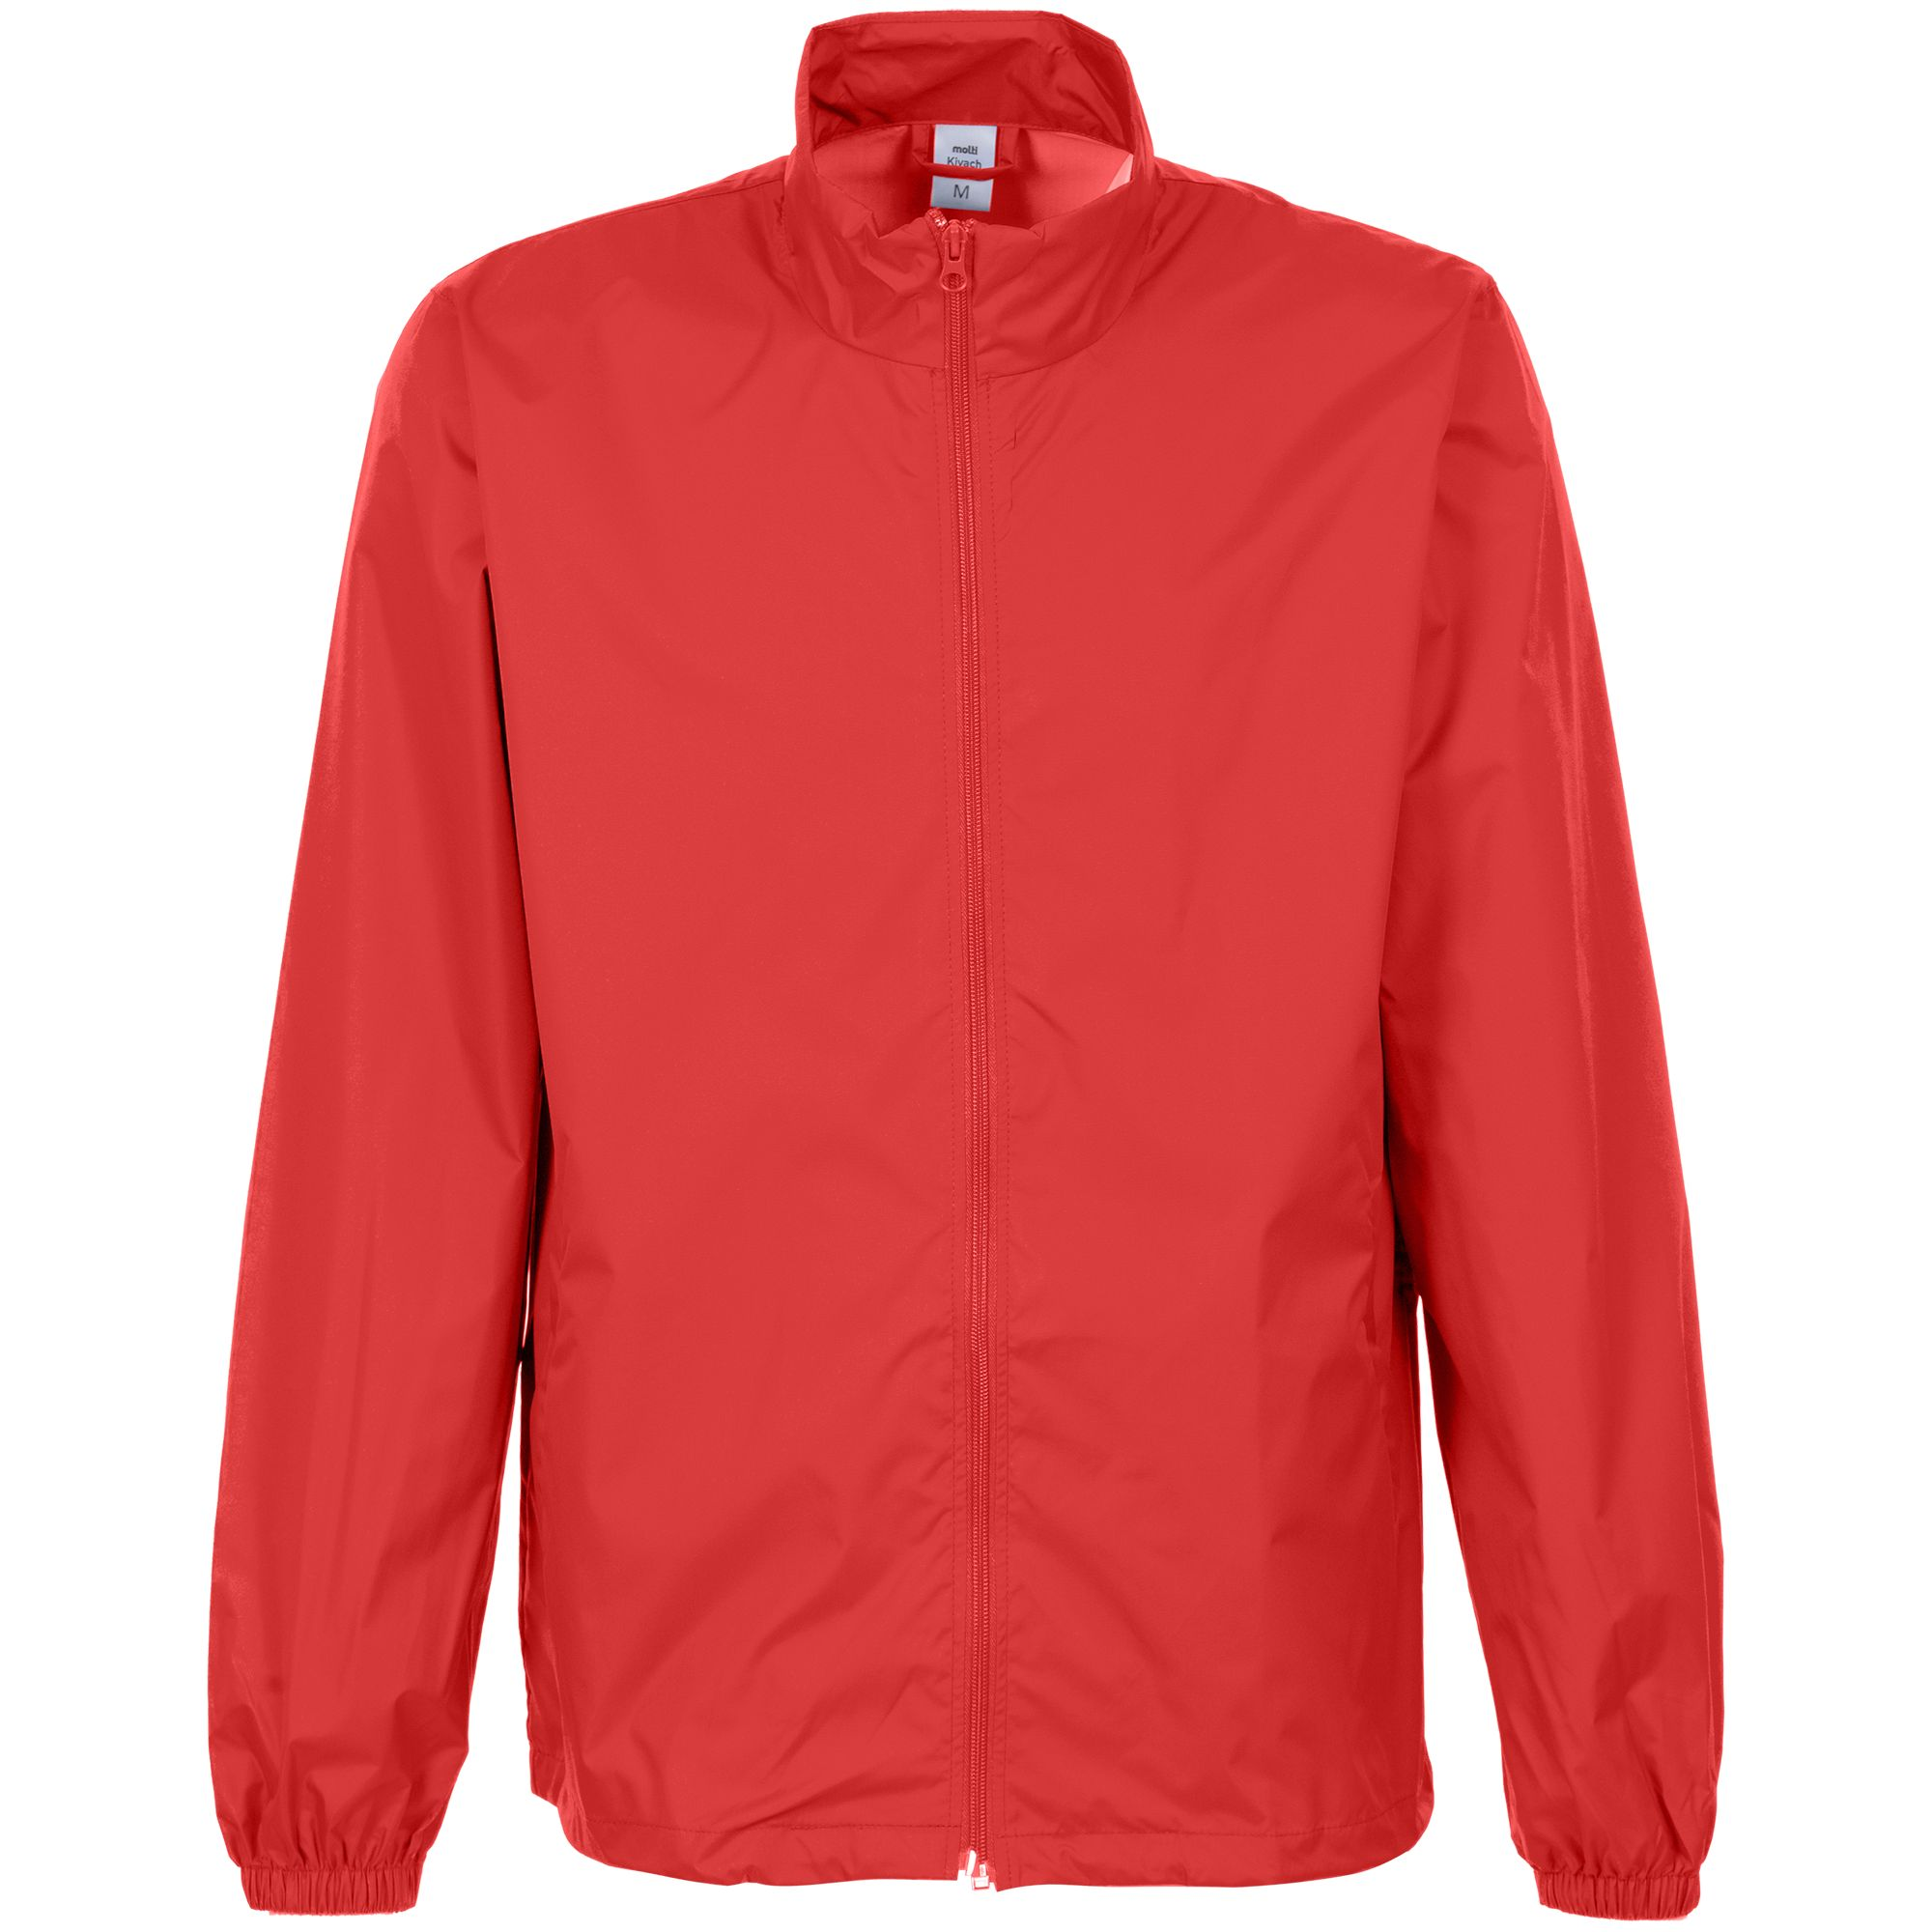 ຂາຍສົ່ງກາງແຈ້ງ 100% WaterProof Polyester windproof ຜູ້ຊາຍ Rain jacket raincoat